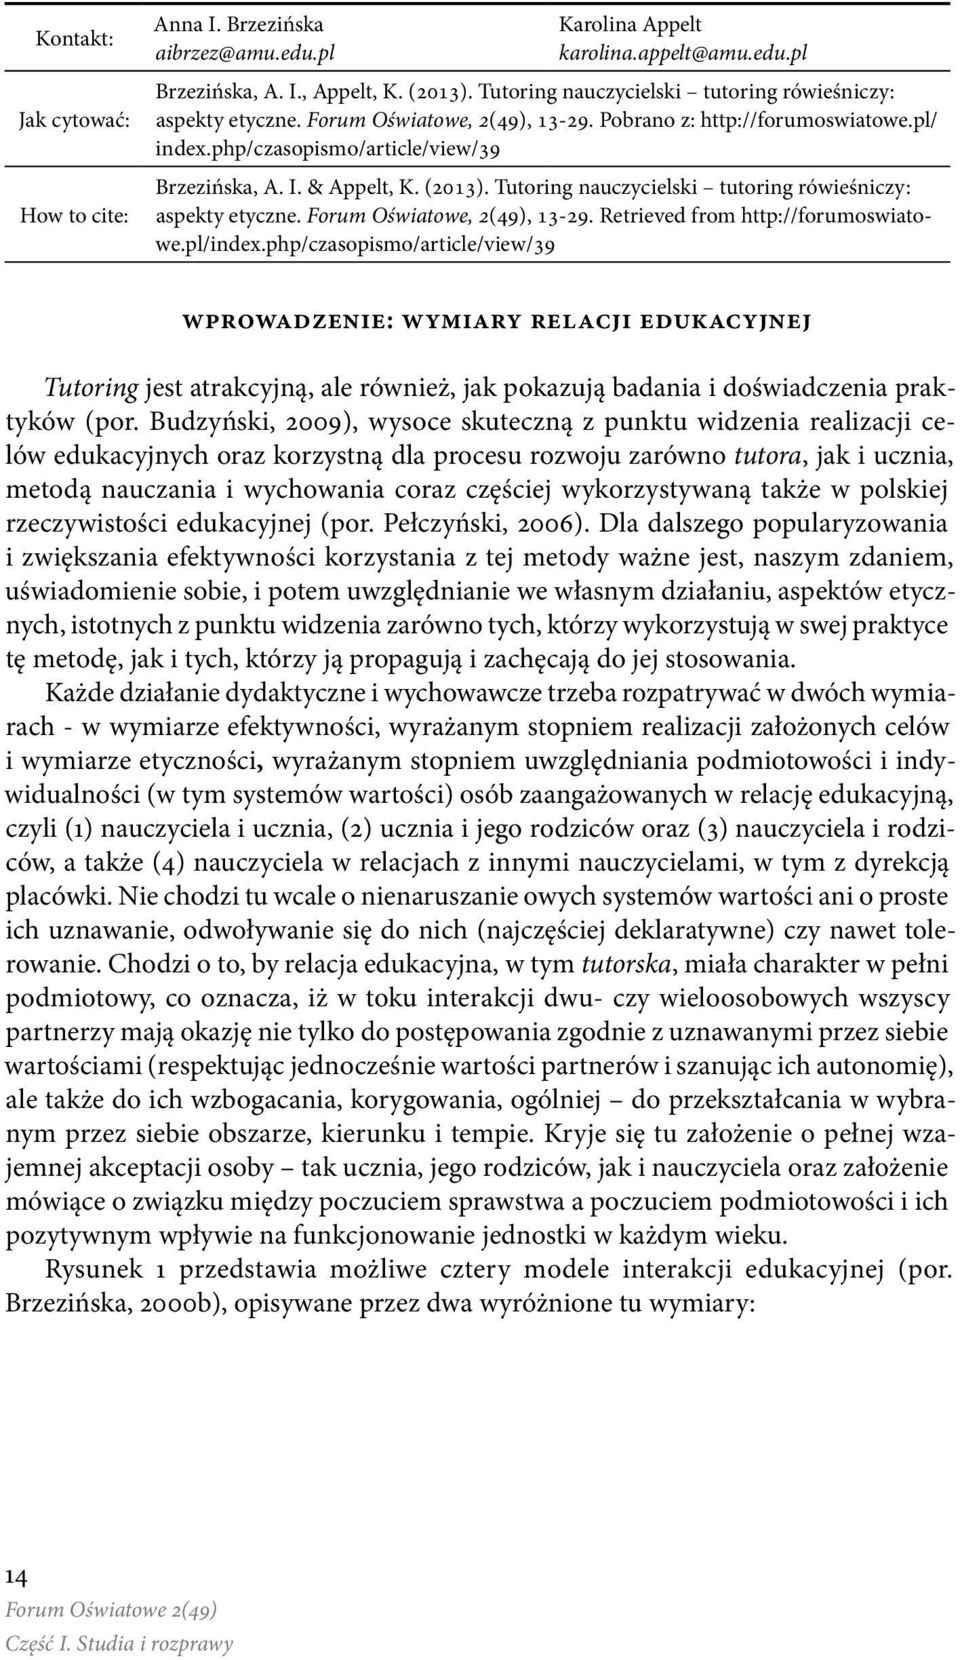 (2013). Tutoring nauczycielski tutoring rówieśniczy: aspekty etyczne. Forum Oświatowe, 2(49), 13-29. Retrieved from http://forumoswiatowe.pl/index.